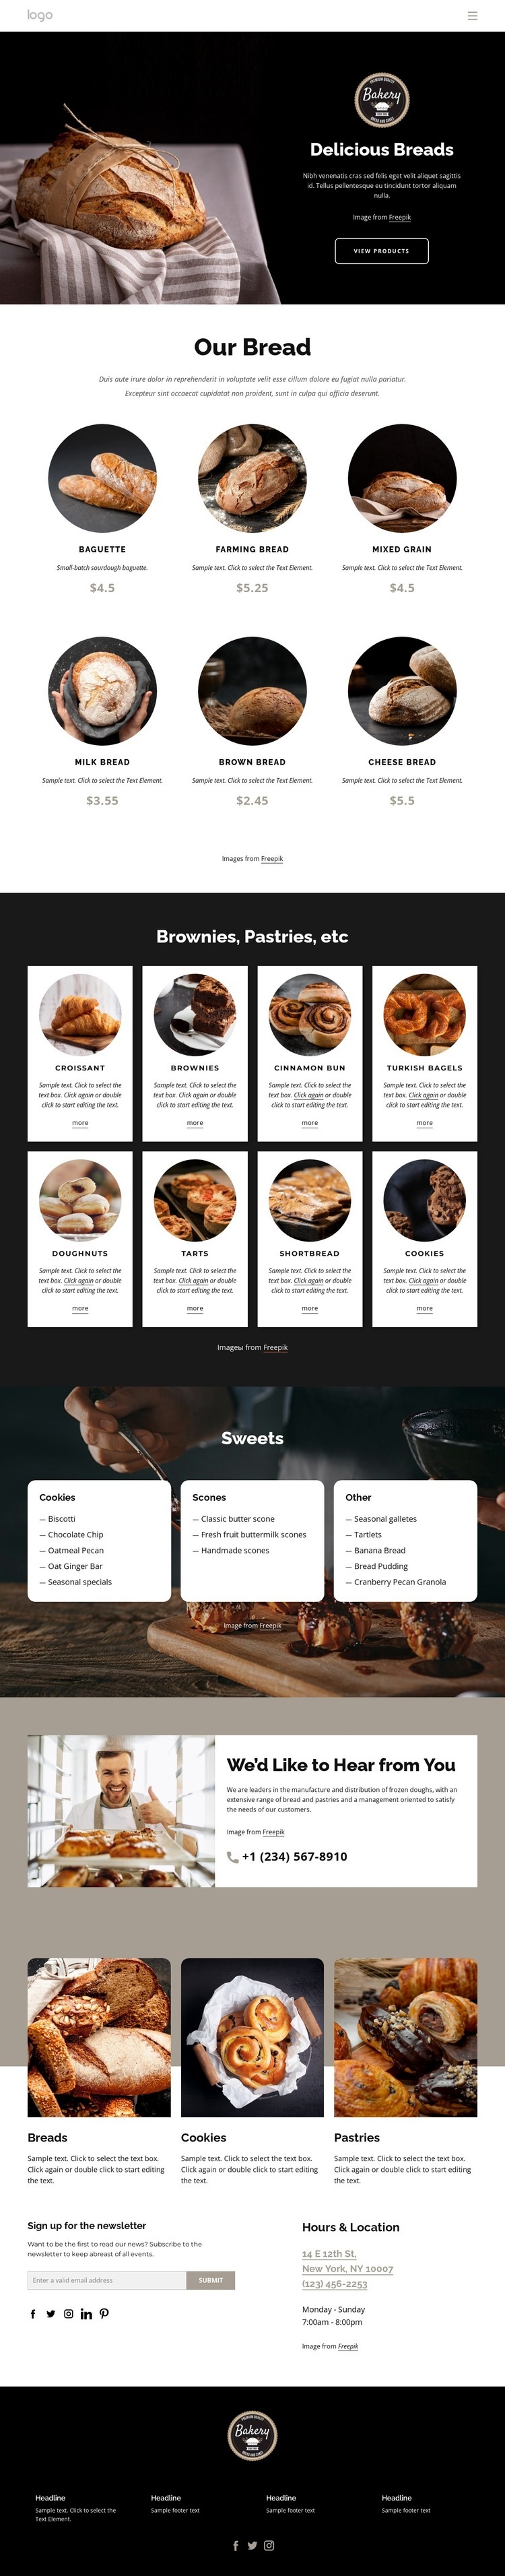 Delicious breads Web Page Design